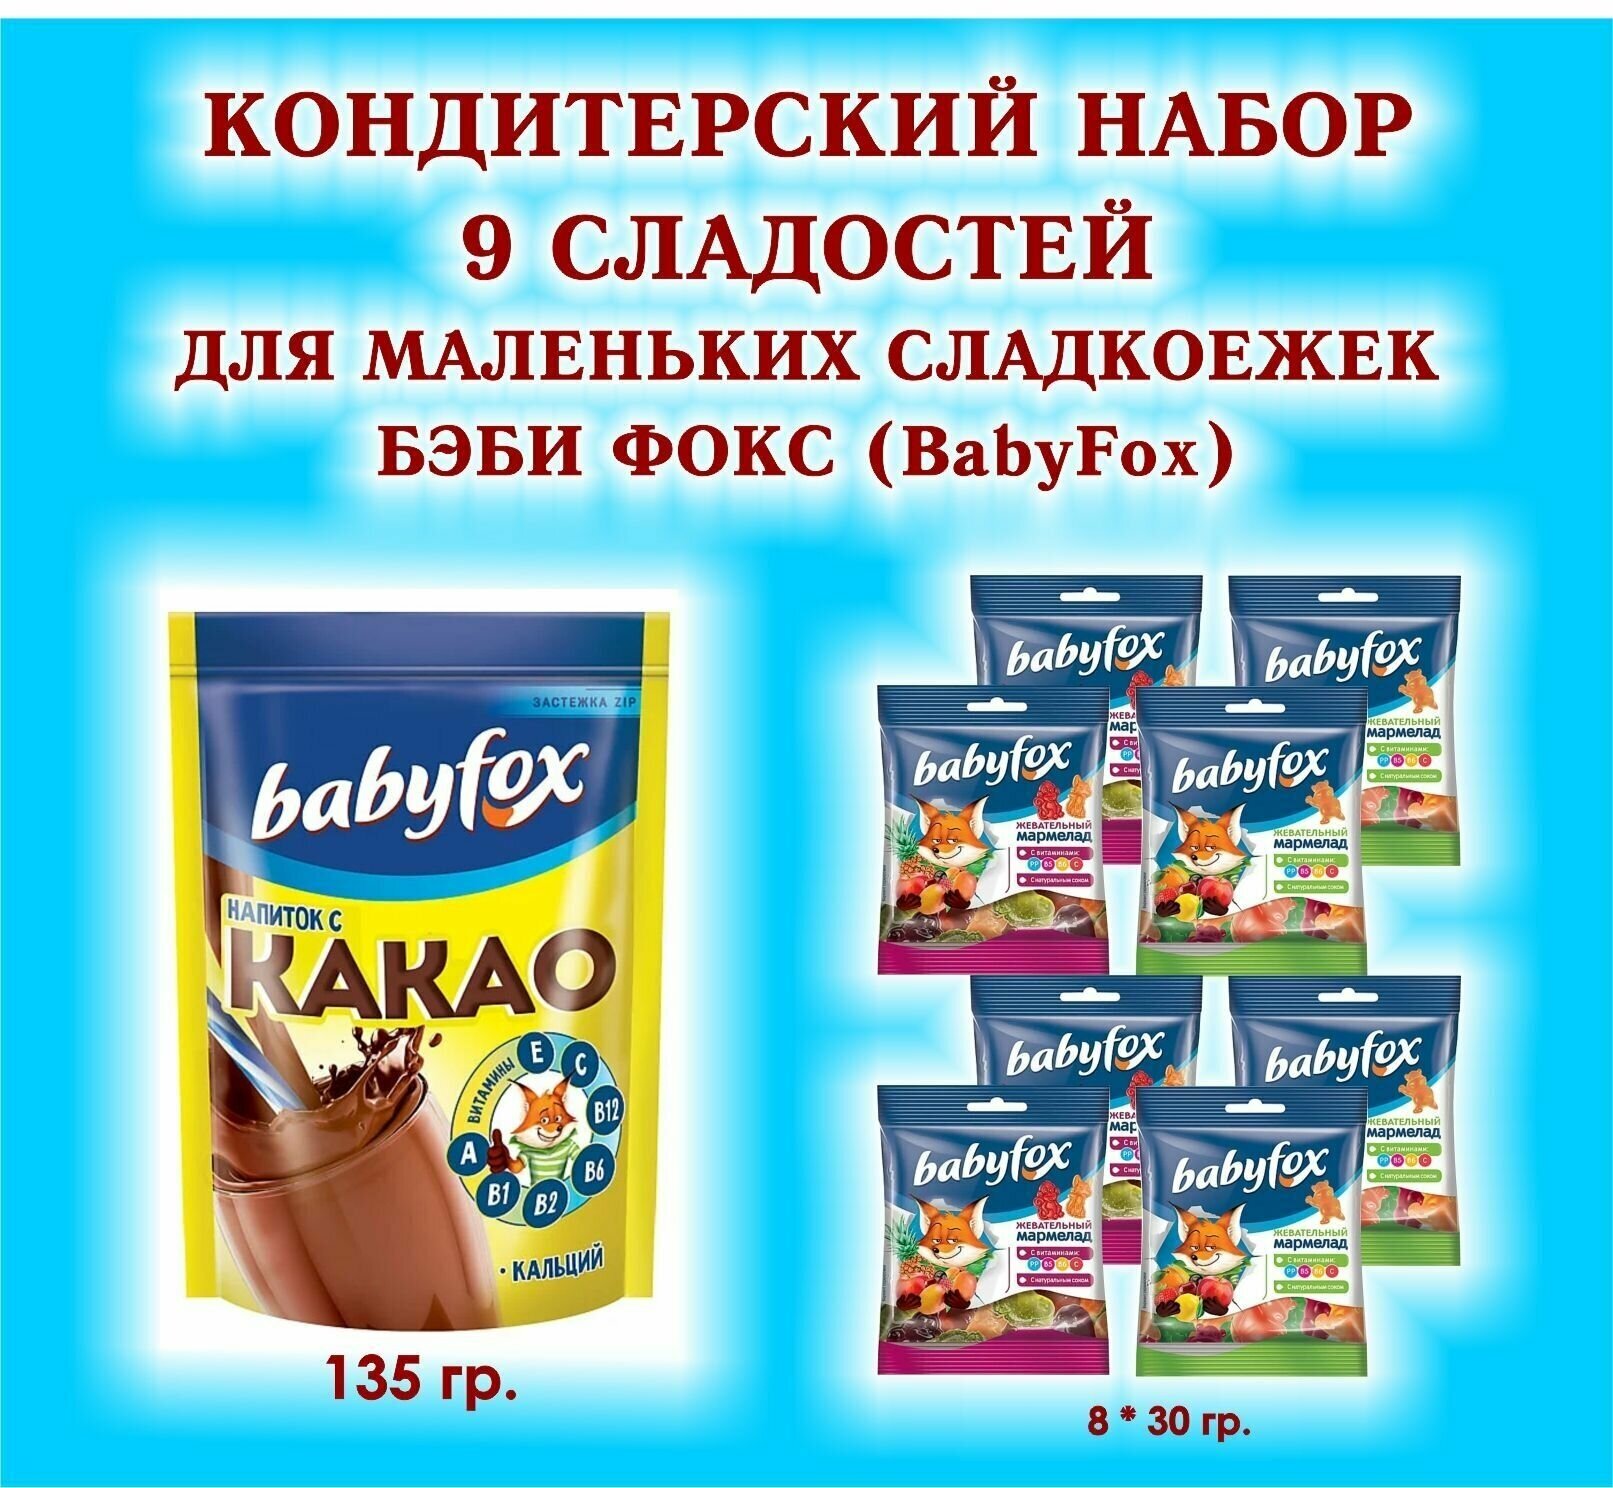 Набор сладостей "BabyFox"-Мармелад жевательный 8*30 гр.+какао 1*135 гр.-подарок для маленьких сладкоежек